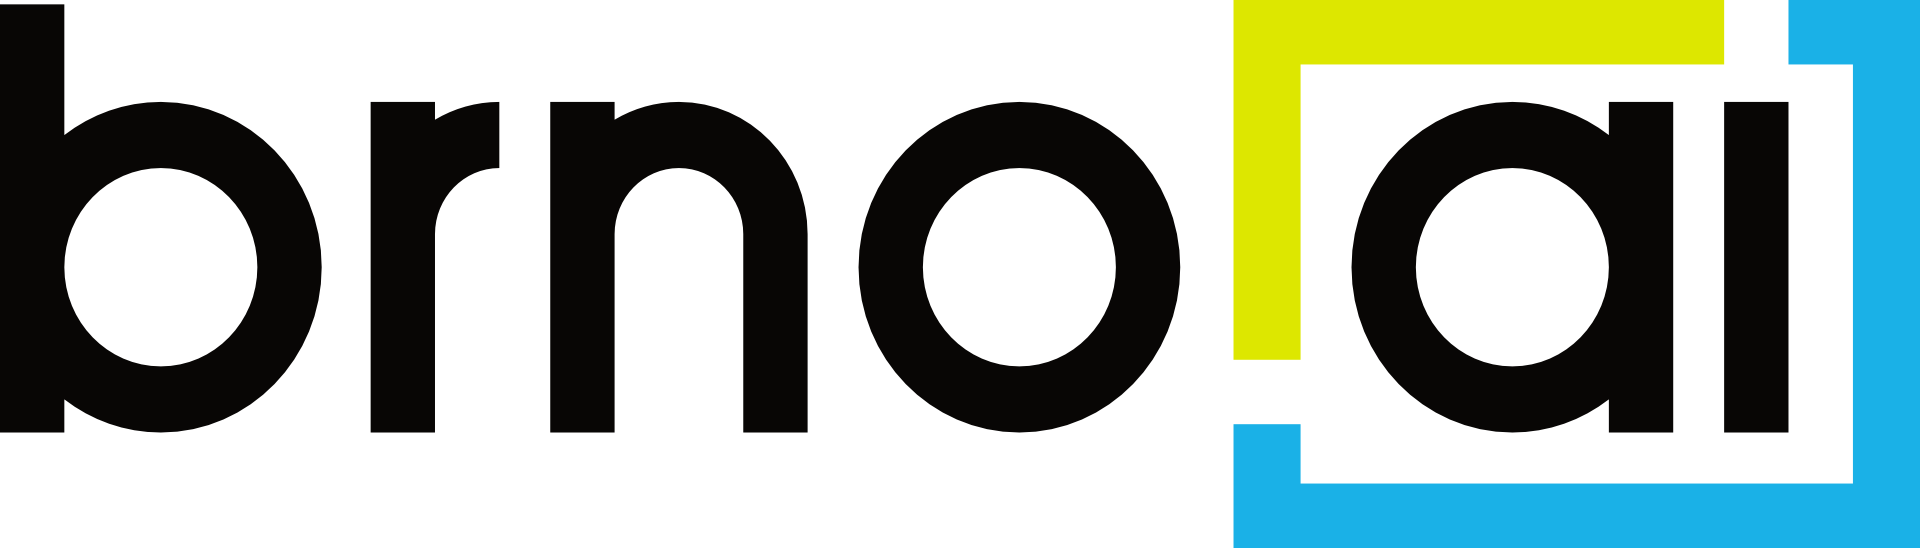 Brno.AI logo